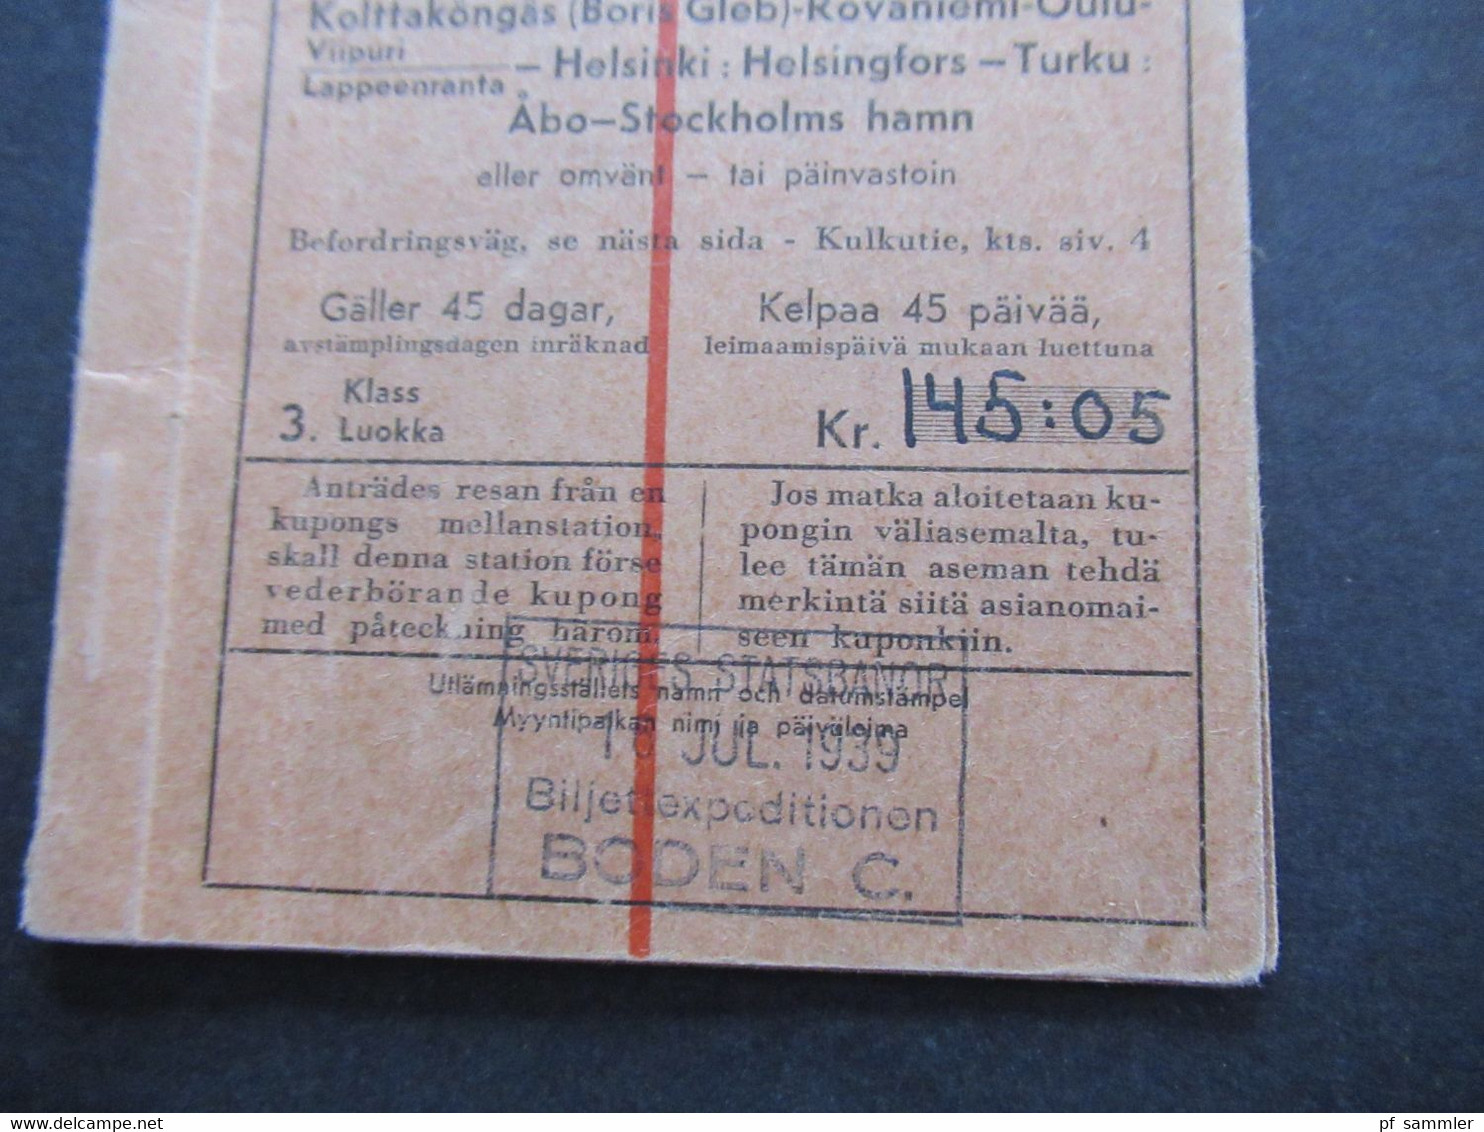 Schweden 1939 Rundtur T2 Bodens Central Nordisk Rundresetrafik Rundreise Ticket Ab Stockholm Zug / Schiff?? - Europa